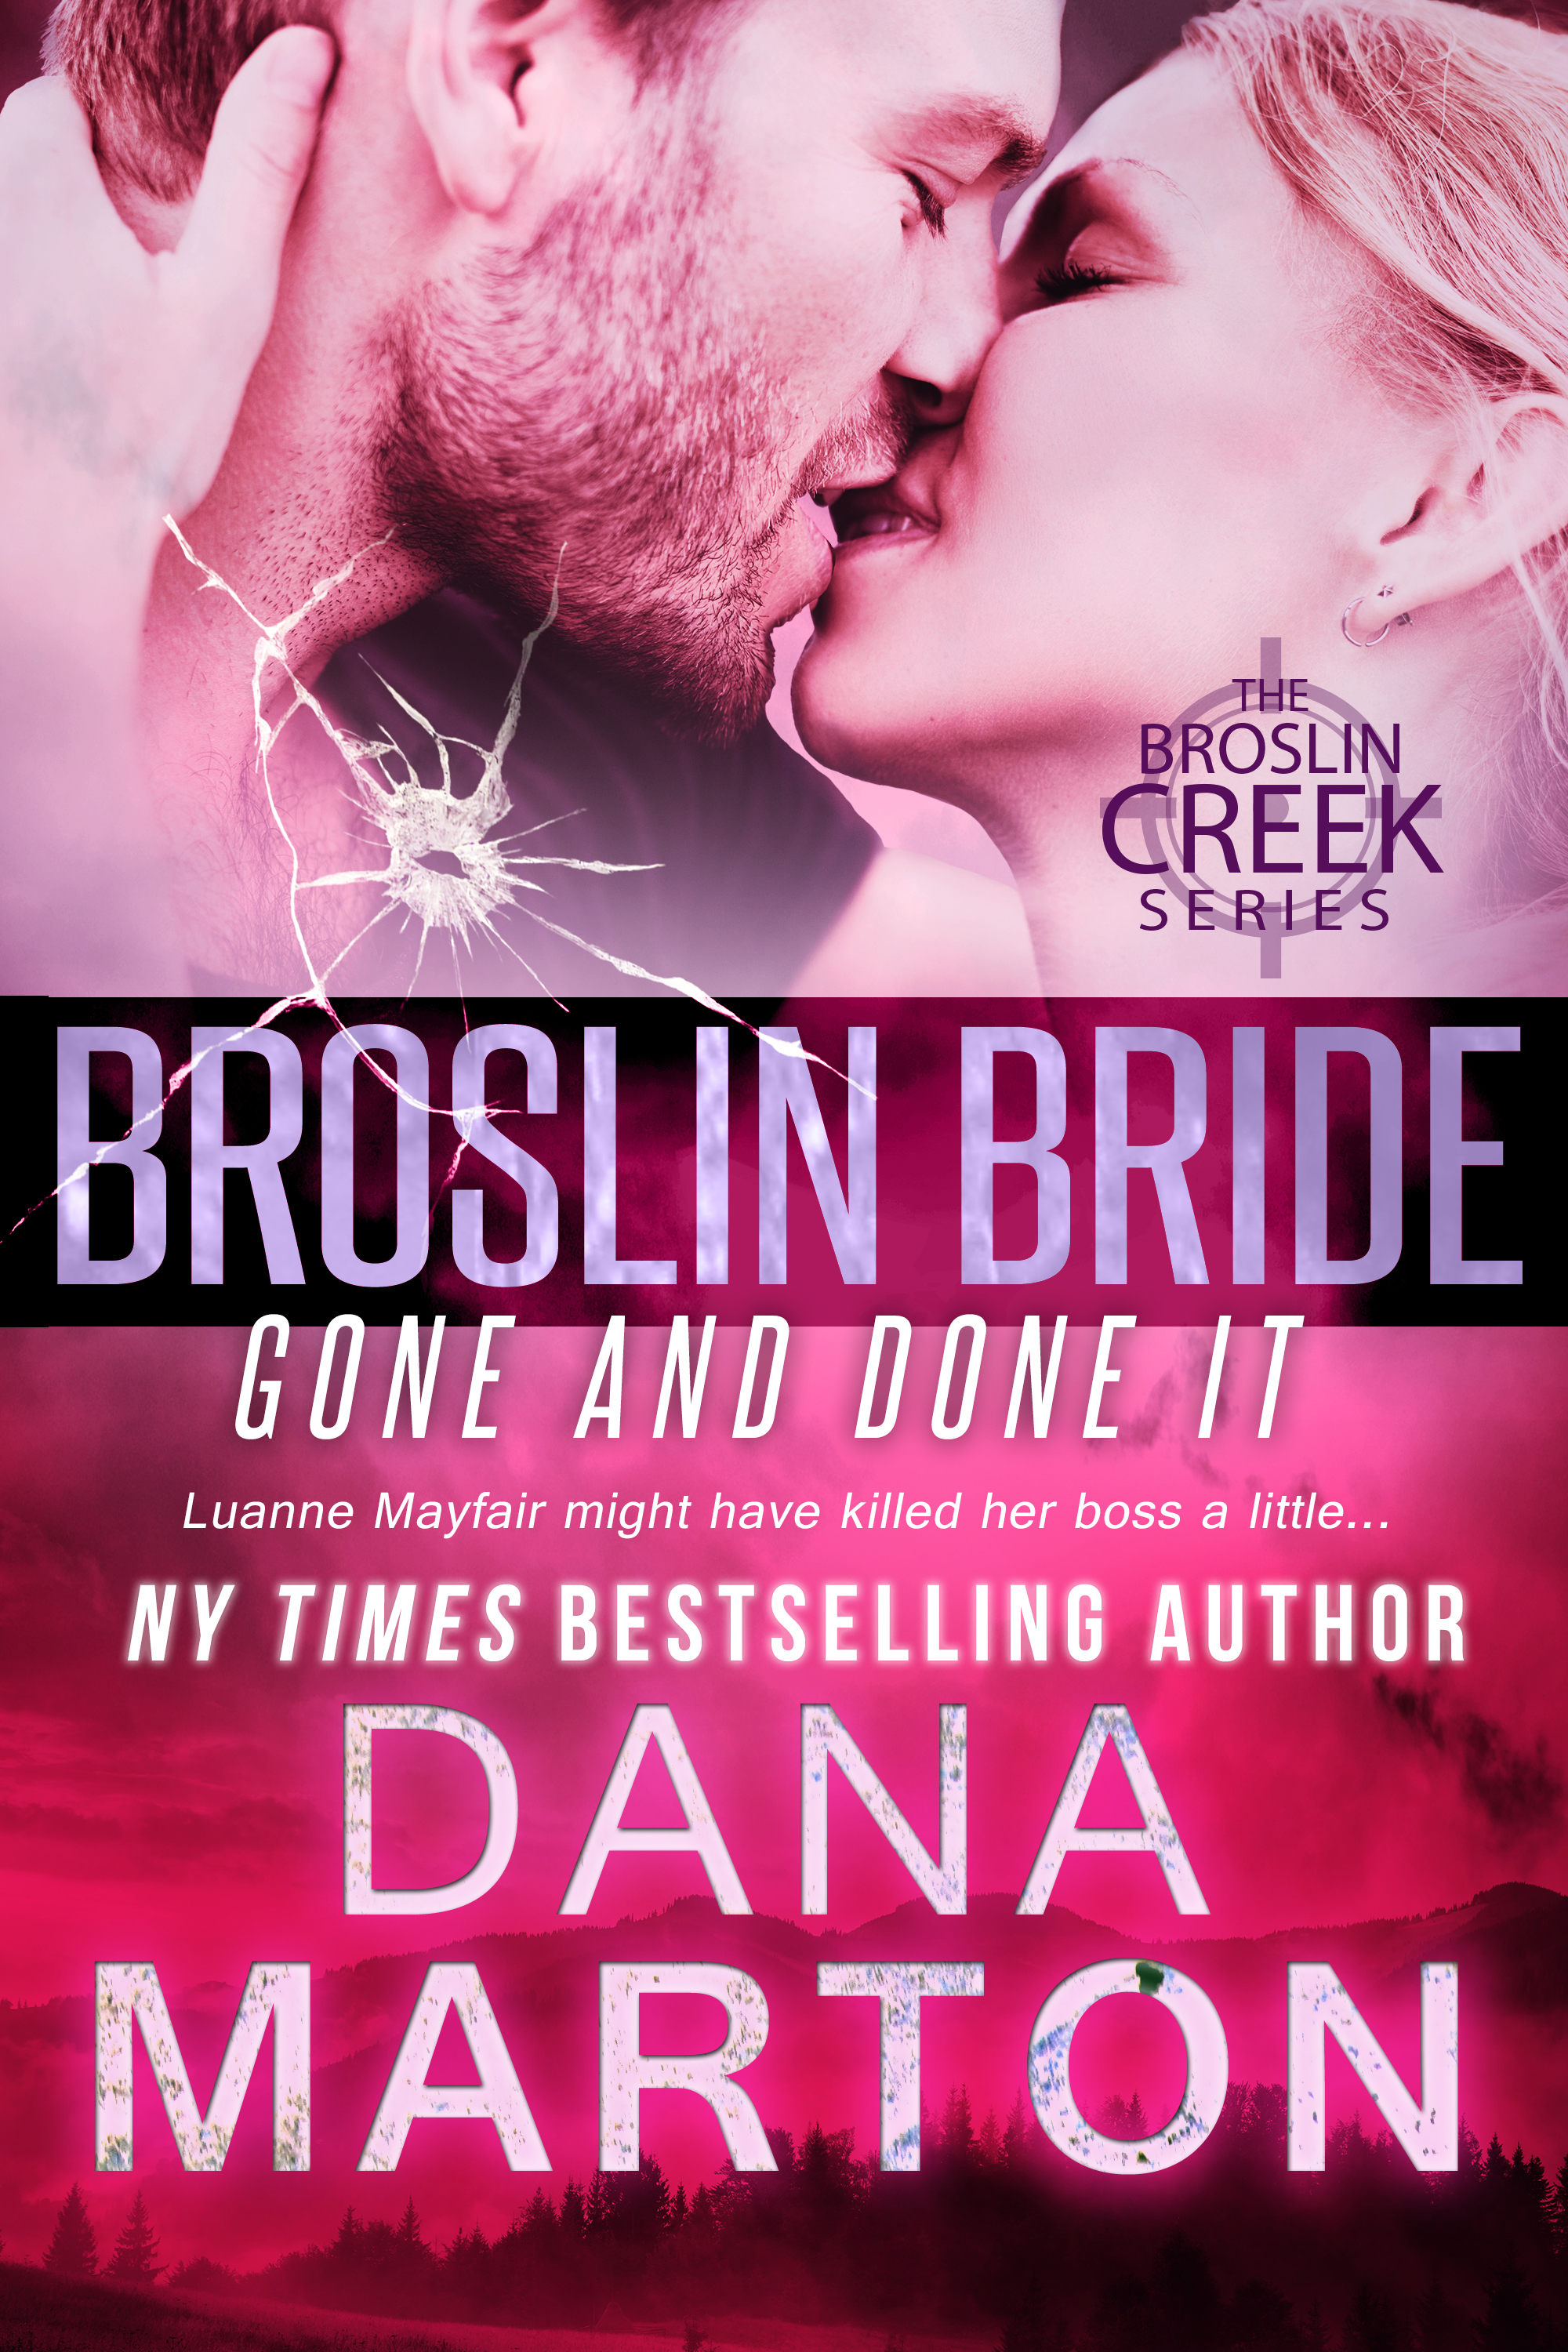 Broslin Bride by Dana Marton